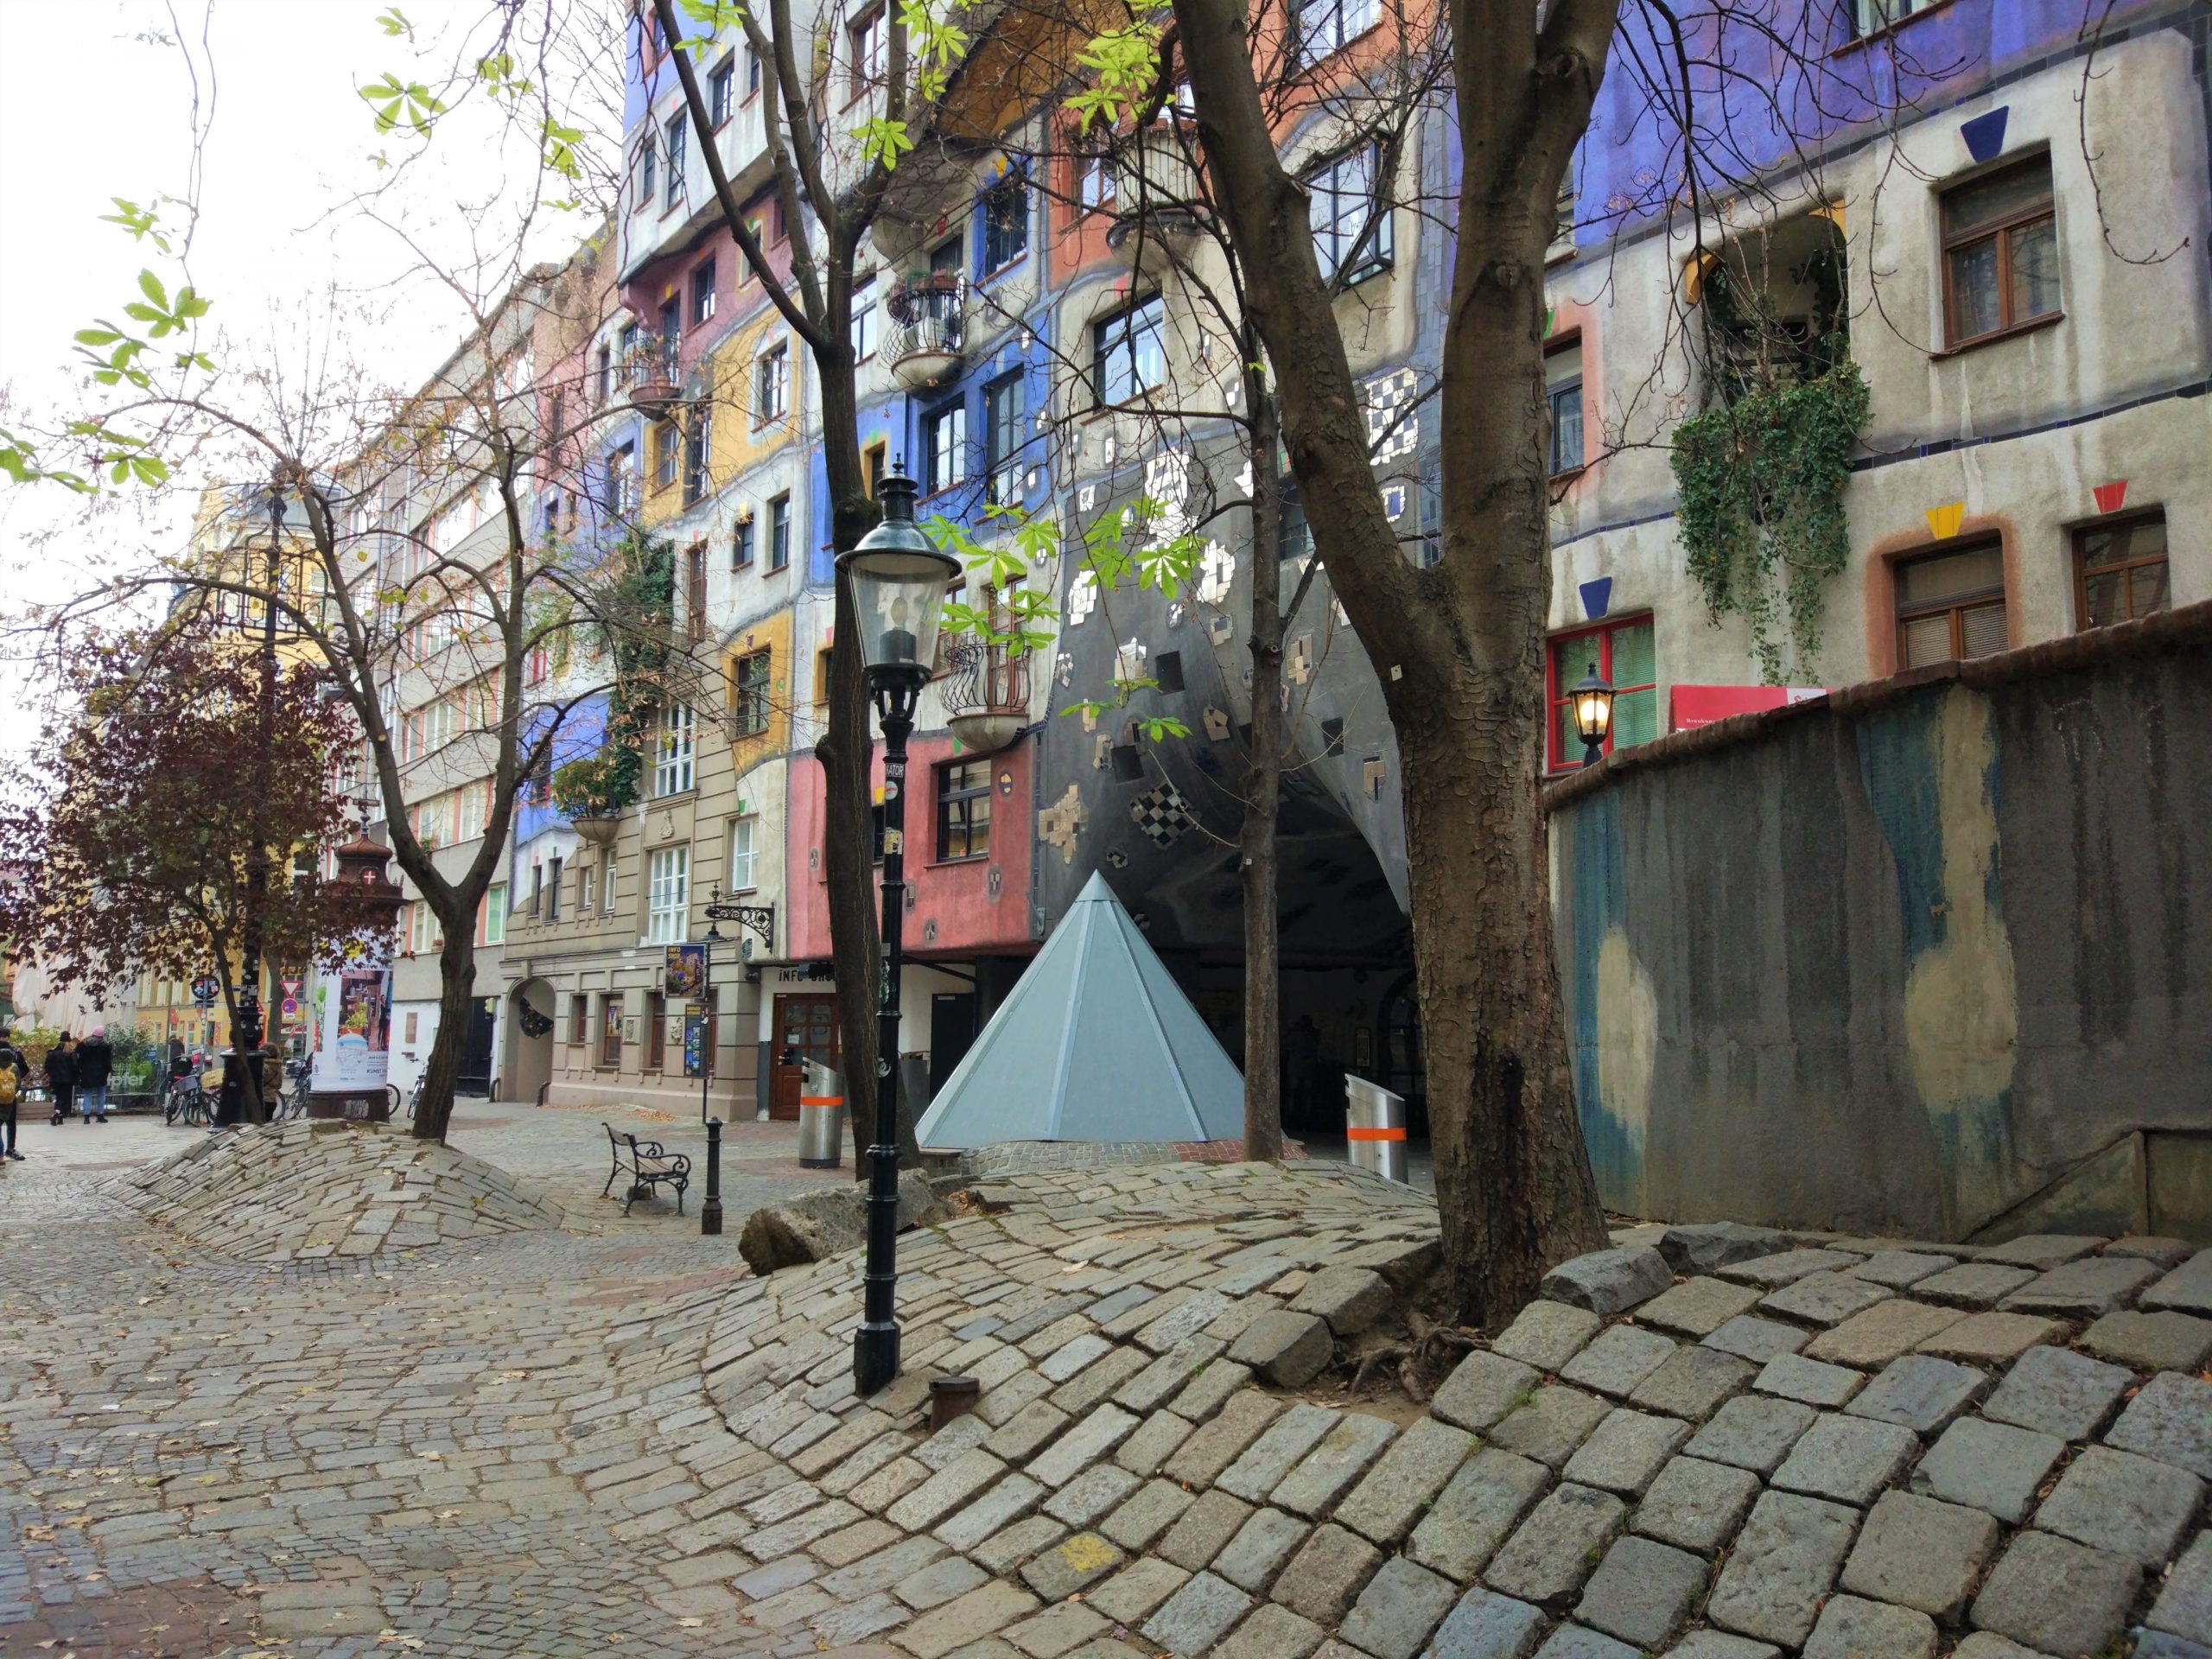 Hundertwasserhaus Vienna_pavimentazione sinuosa